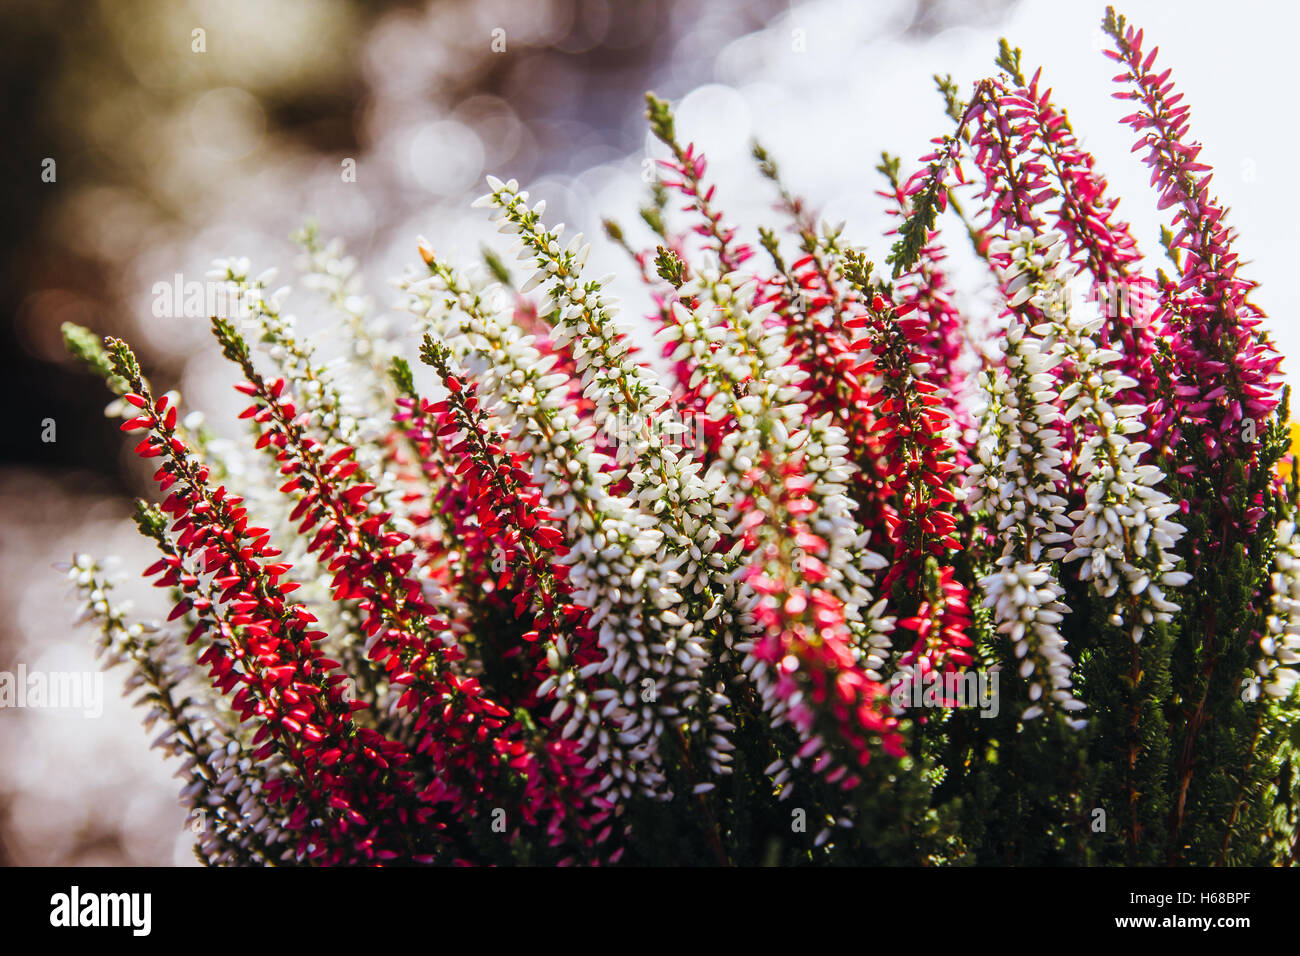 Red pink and white calluna vulgaris flowers. Stock Photo